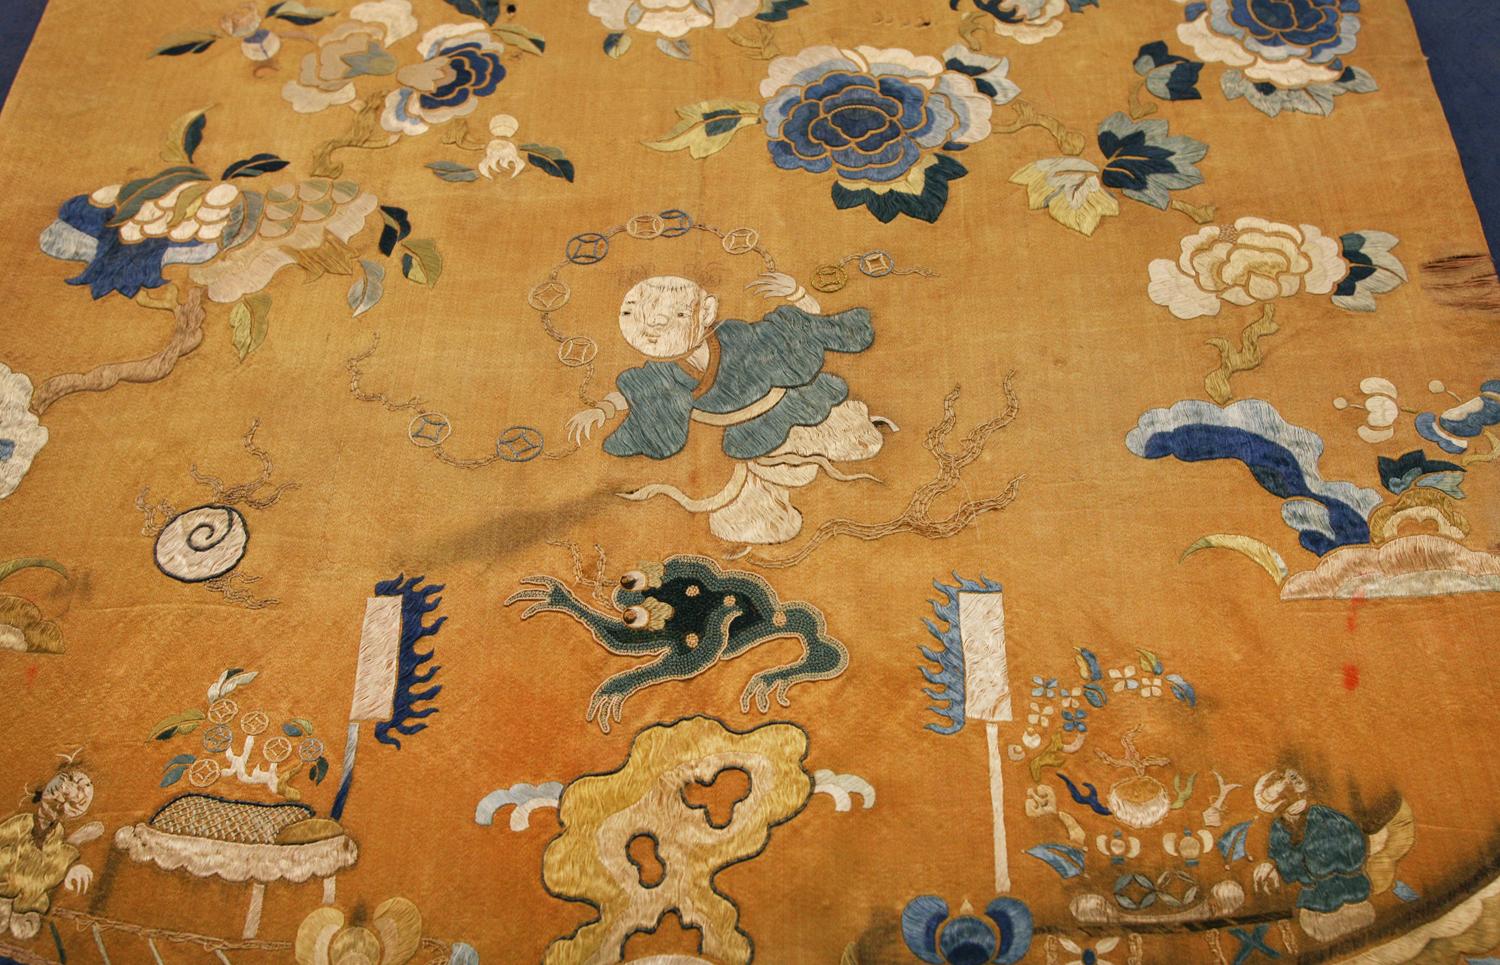 Dies ist ein kleines antikes chinesisches Seidentextil, das zu Beginn des 20. Jahrhunderts um 1900 gewebt wurde und 50 x 47 cm groß ist. Im Mittelpunkt des Designs steht ein Mann, der traditionelle chinesische Talismane in einem Wolkenband hält und